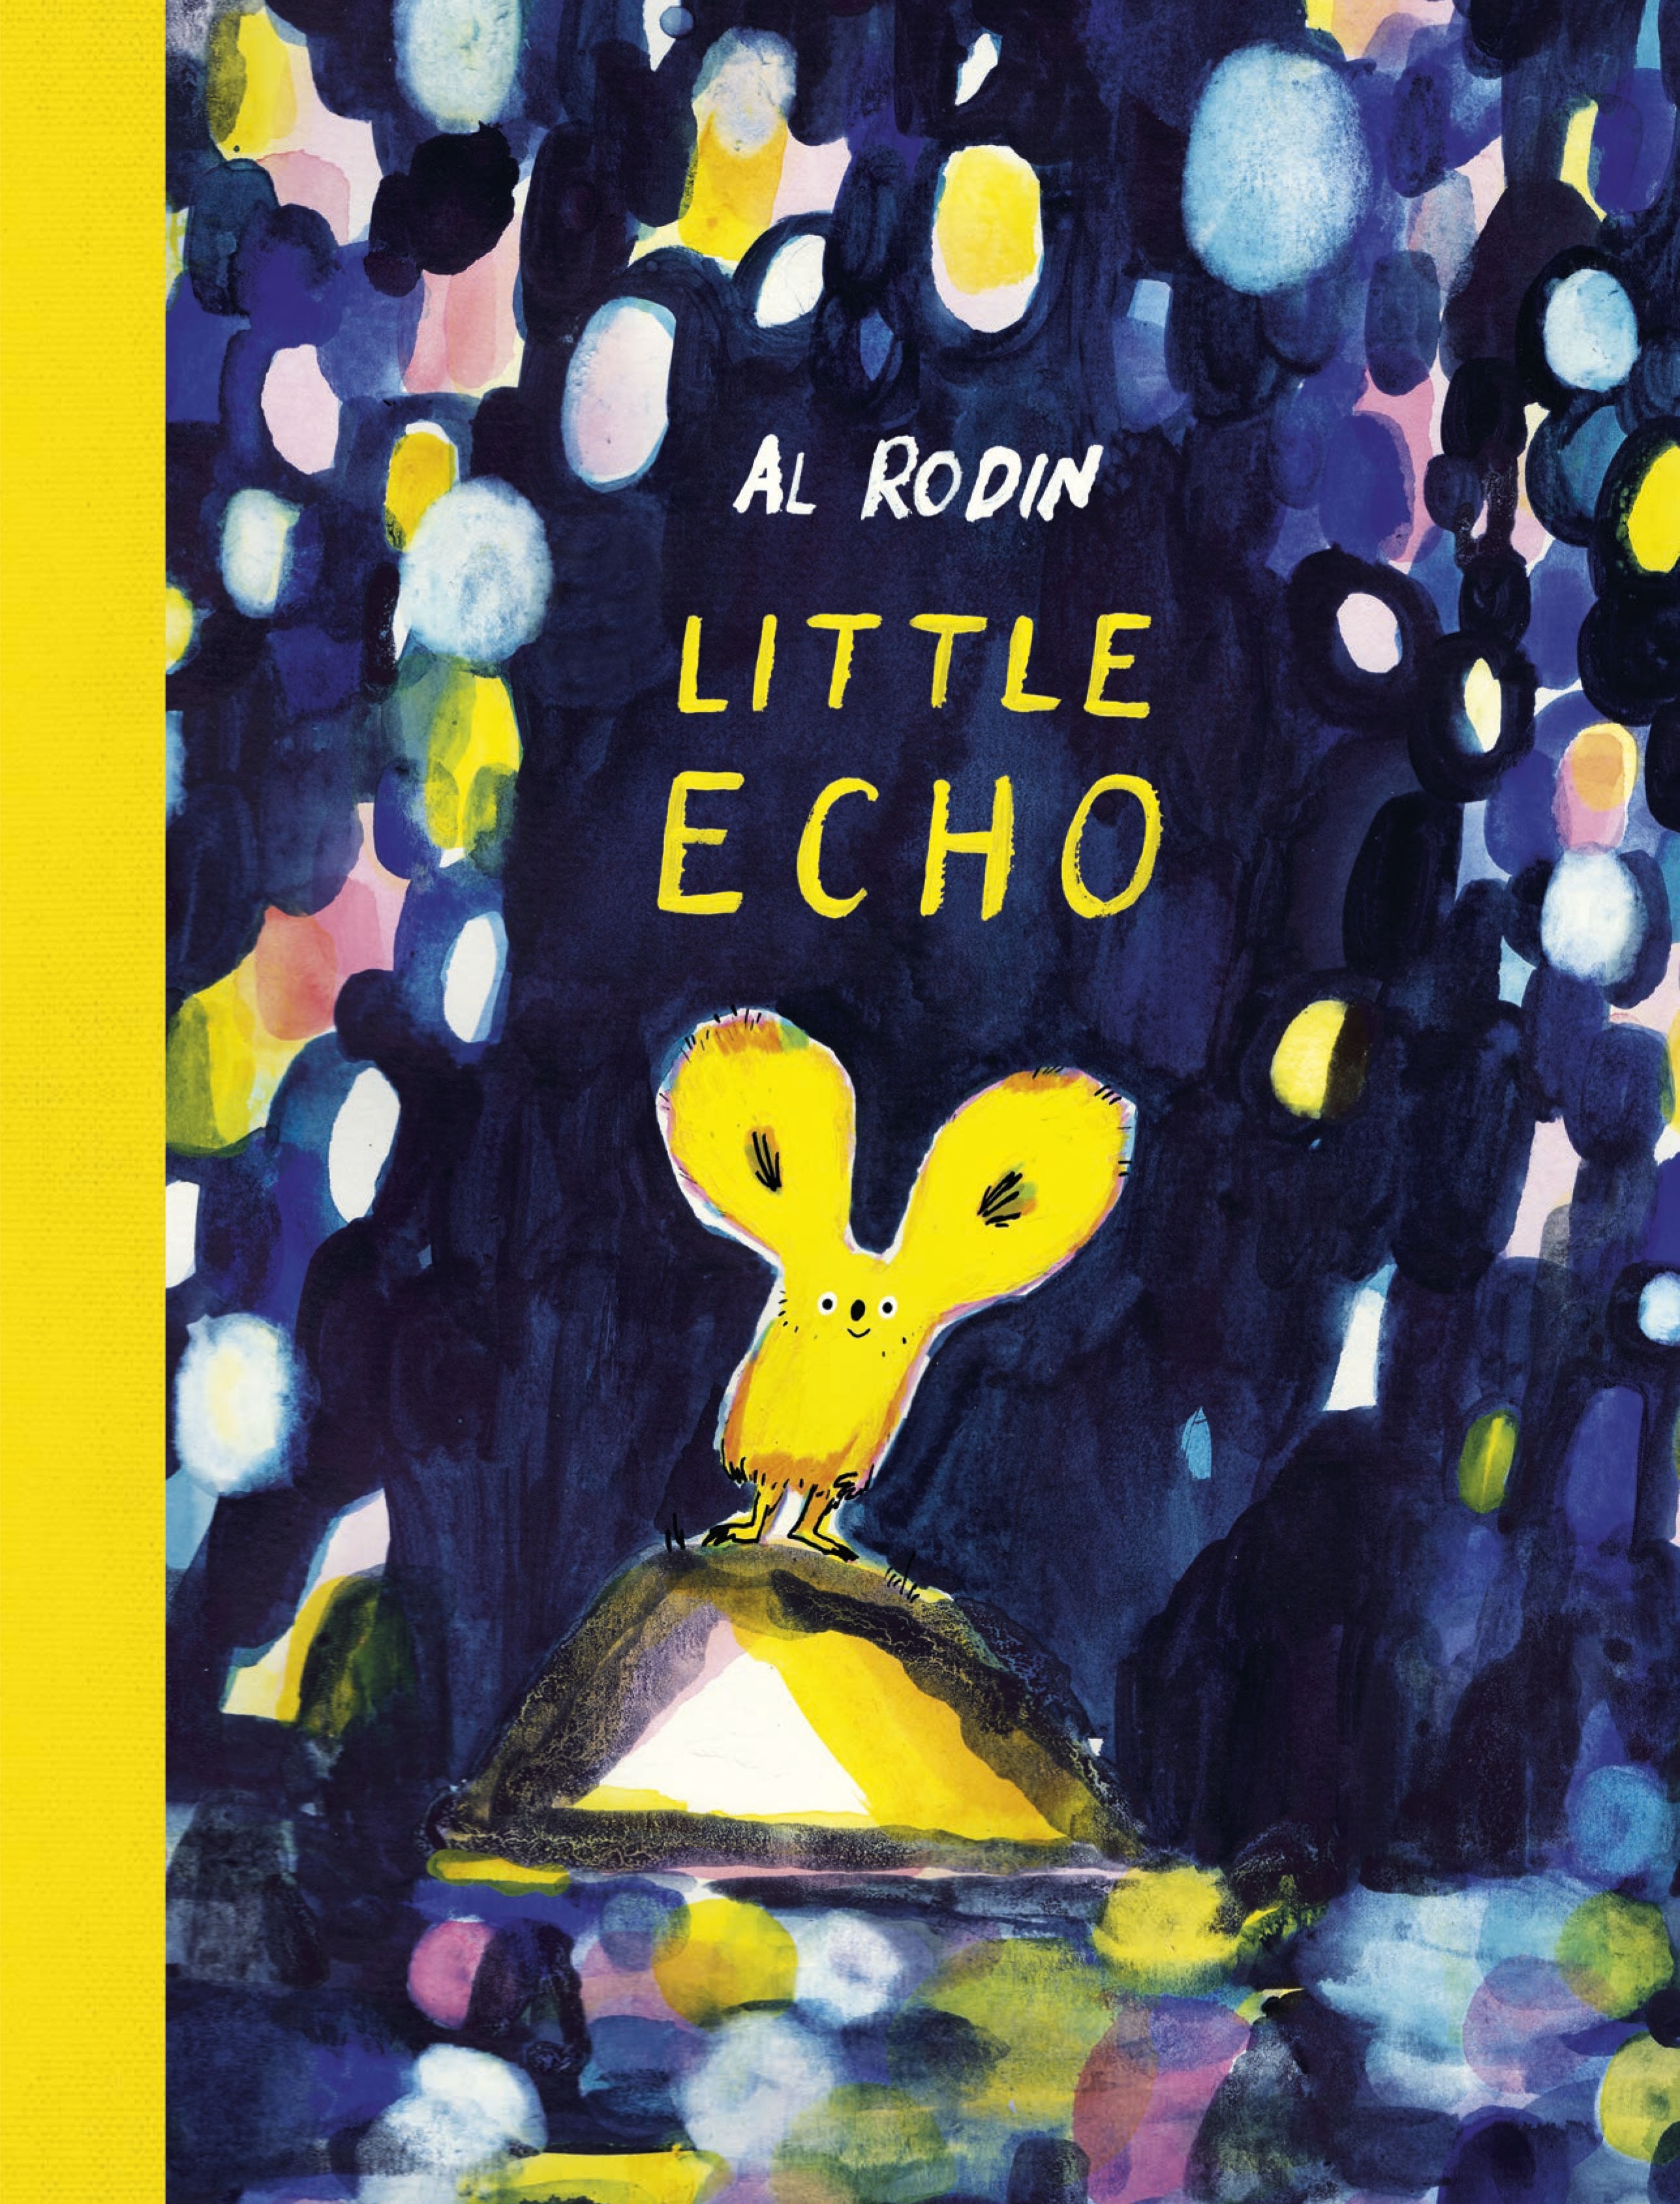 Book “Little Echo” by Al Rodin — June 17, 2021